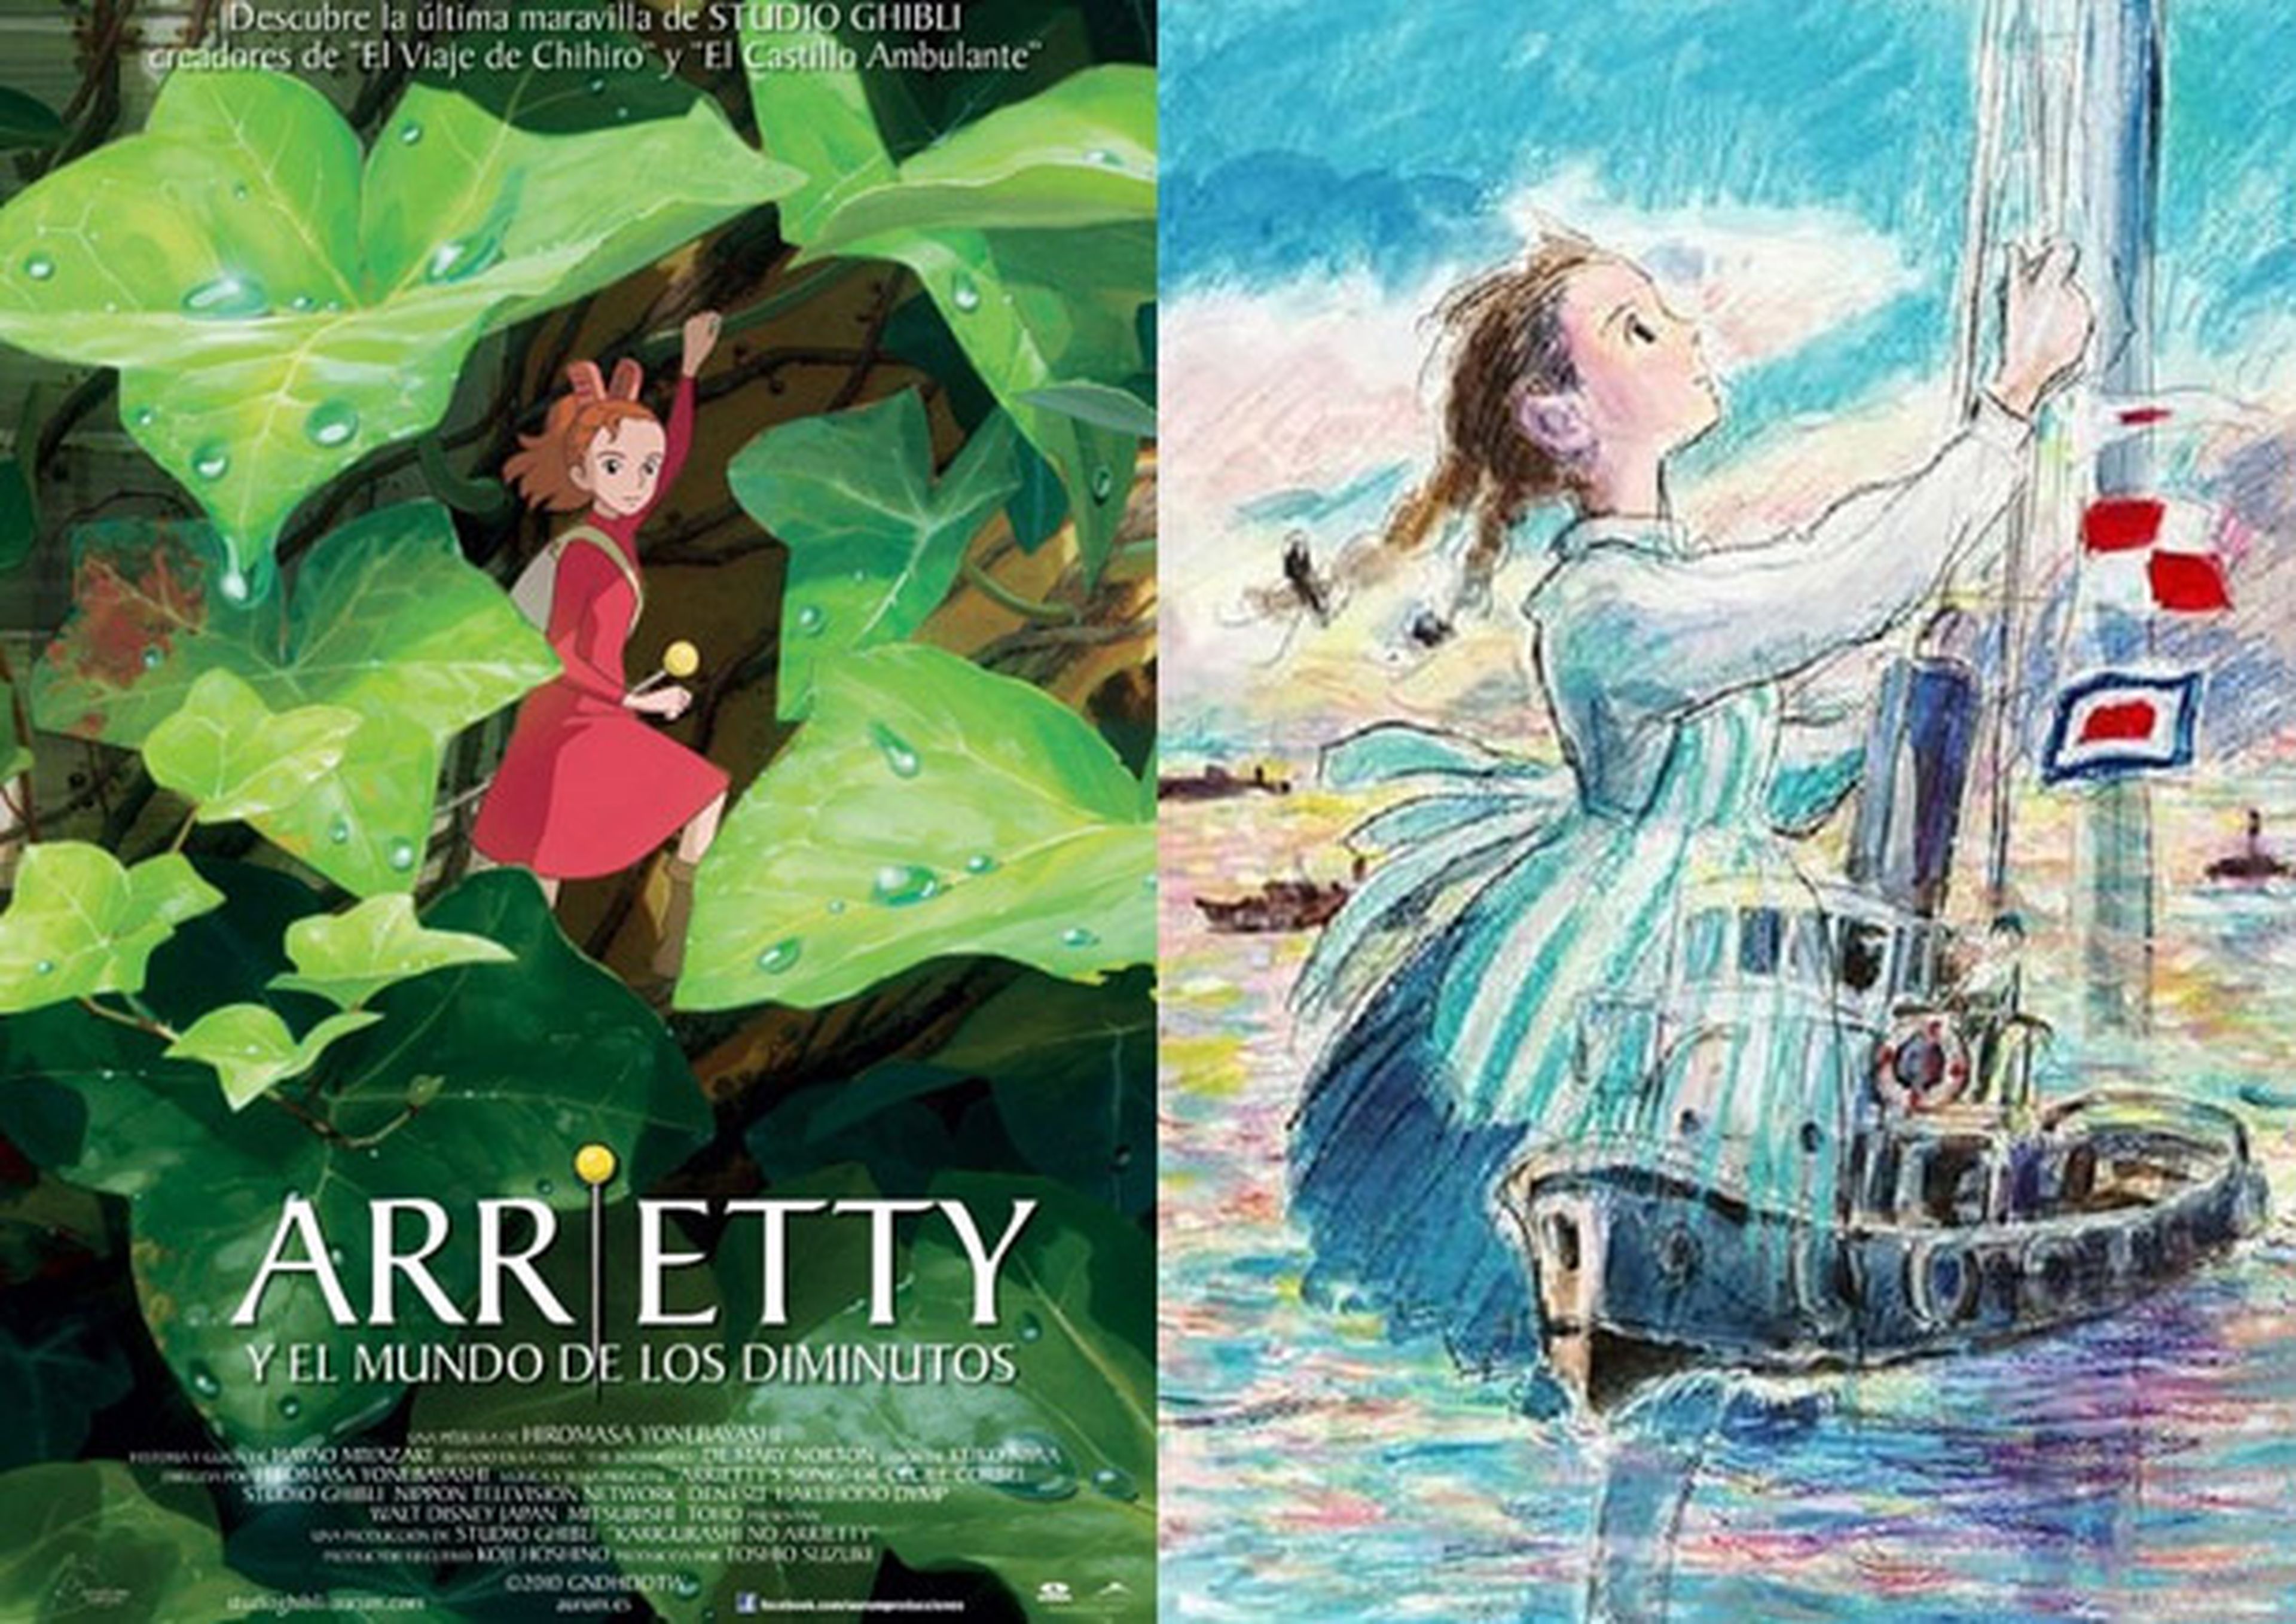 Dos films de Studio Ghibli pre-nominados a los Globos de Oro